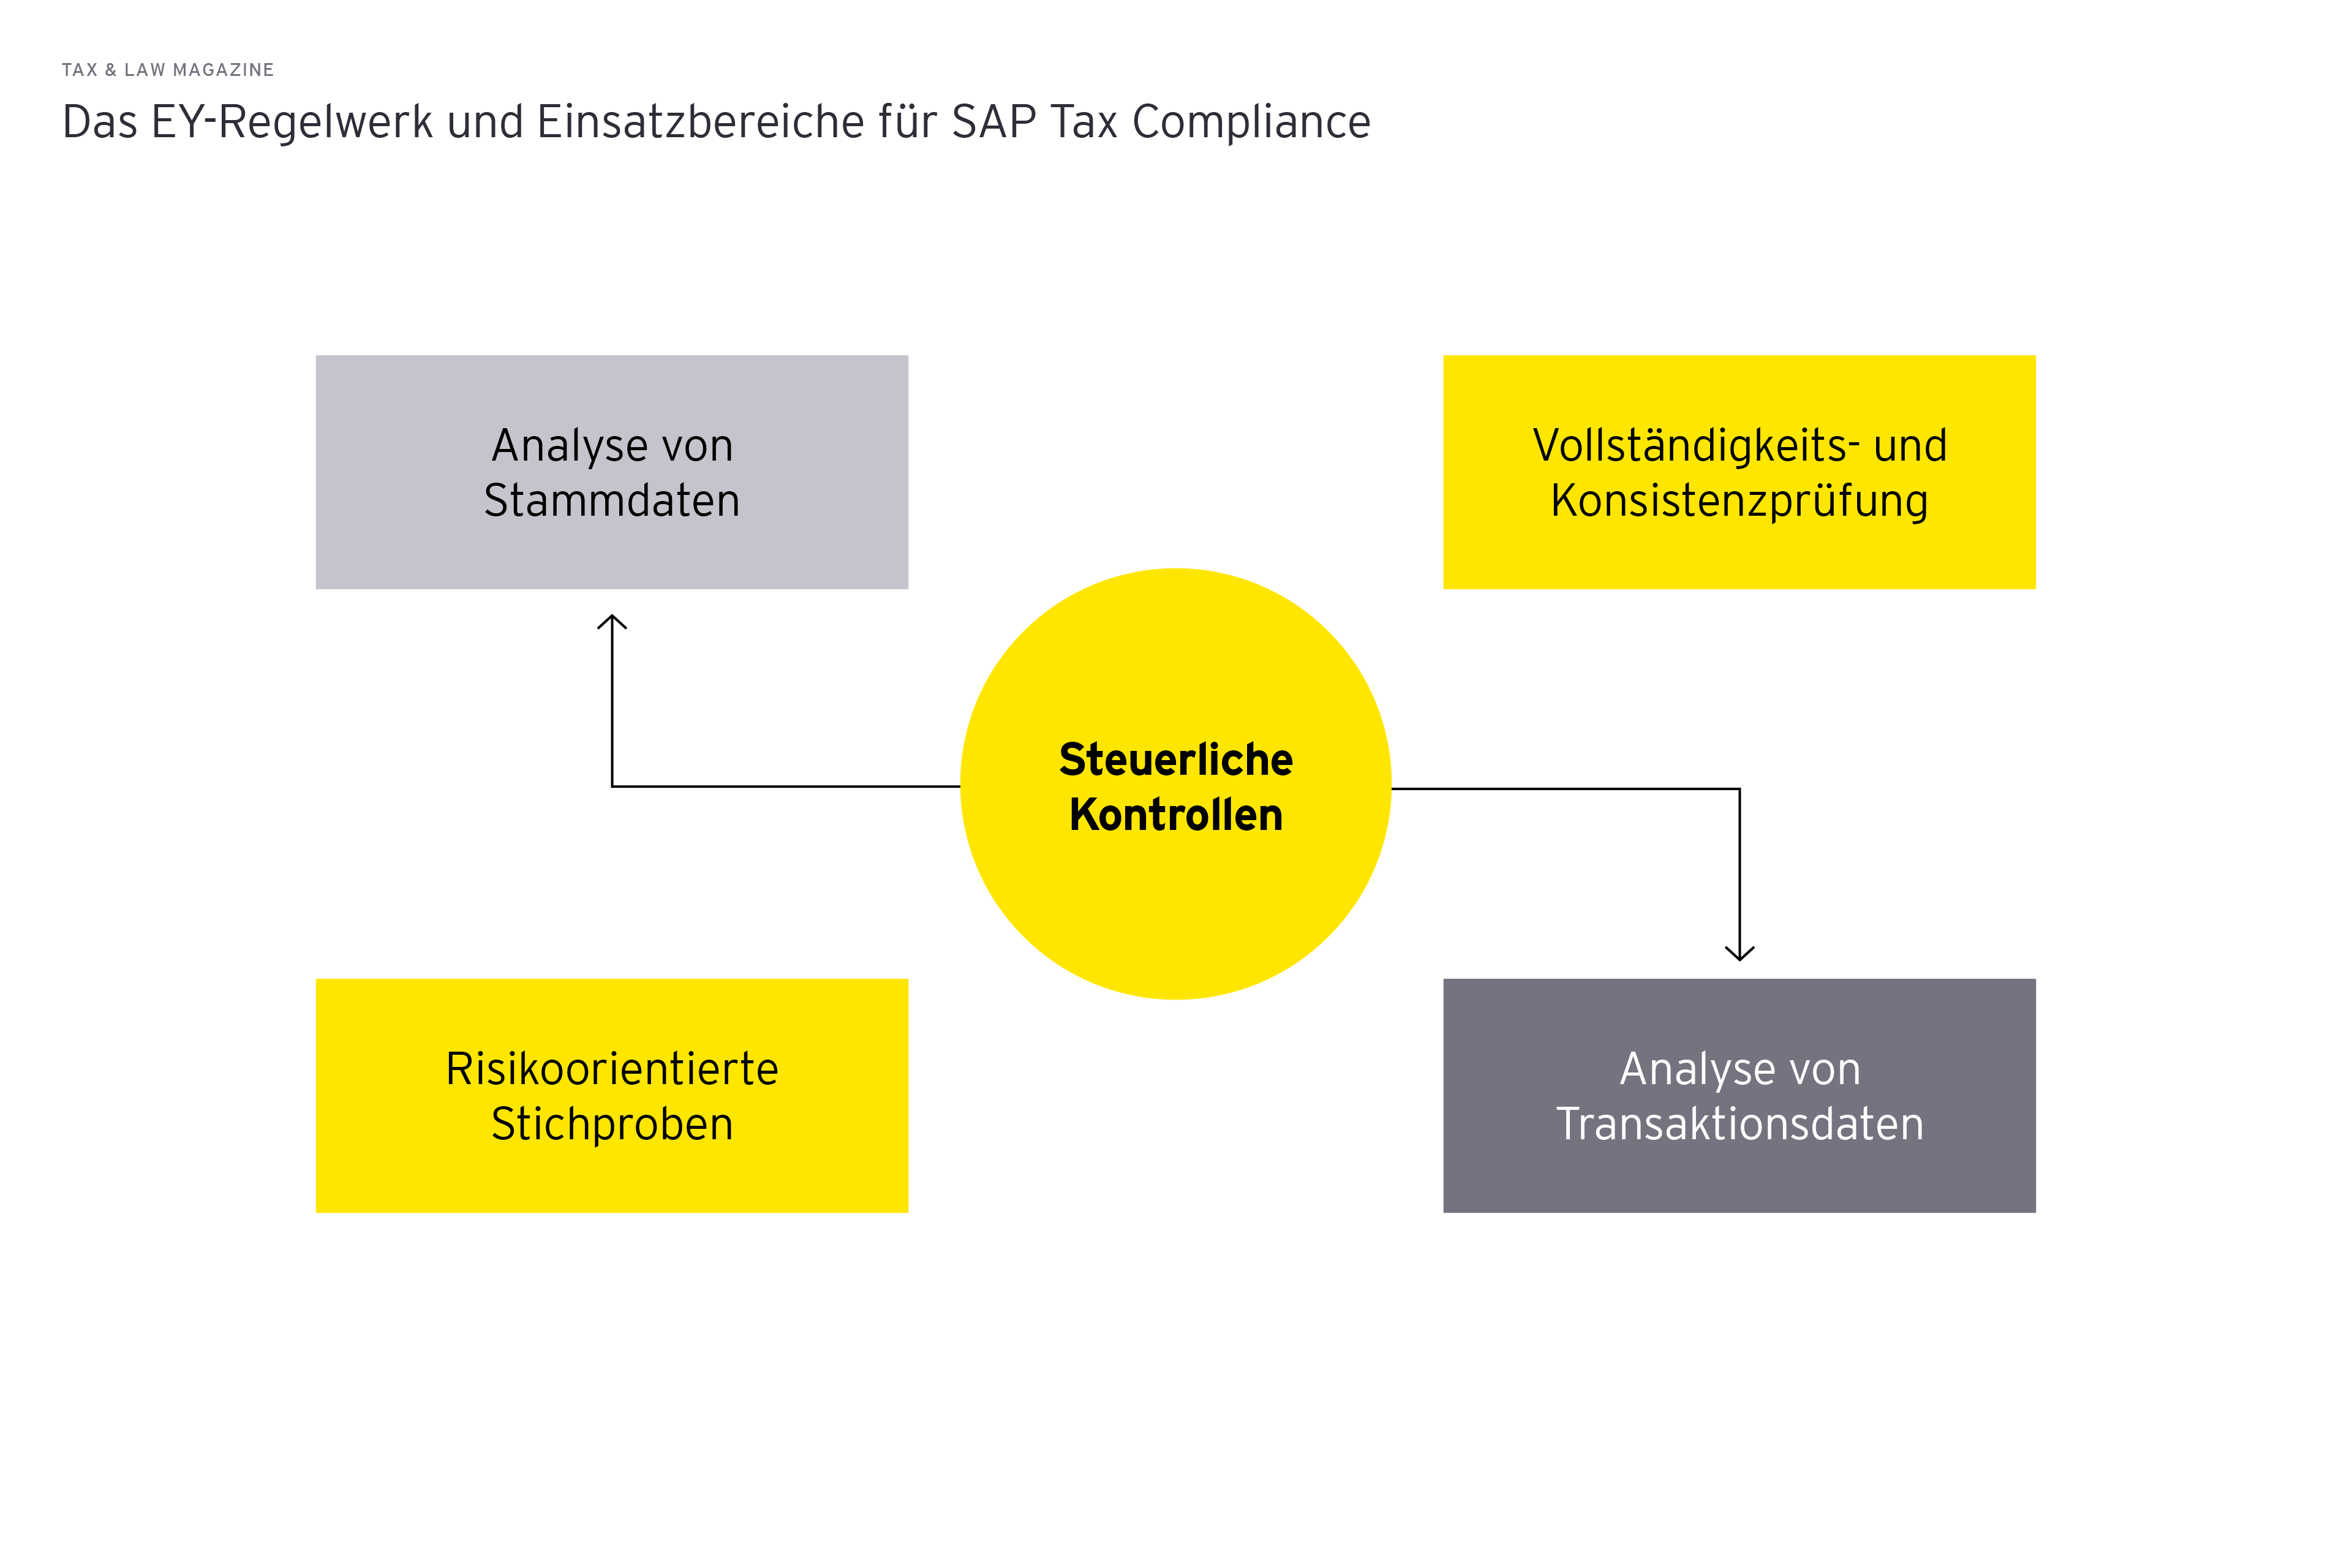 Das EY-Regelwerk und Einsatzbereiche fuer SAP Tax Compliance